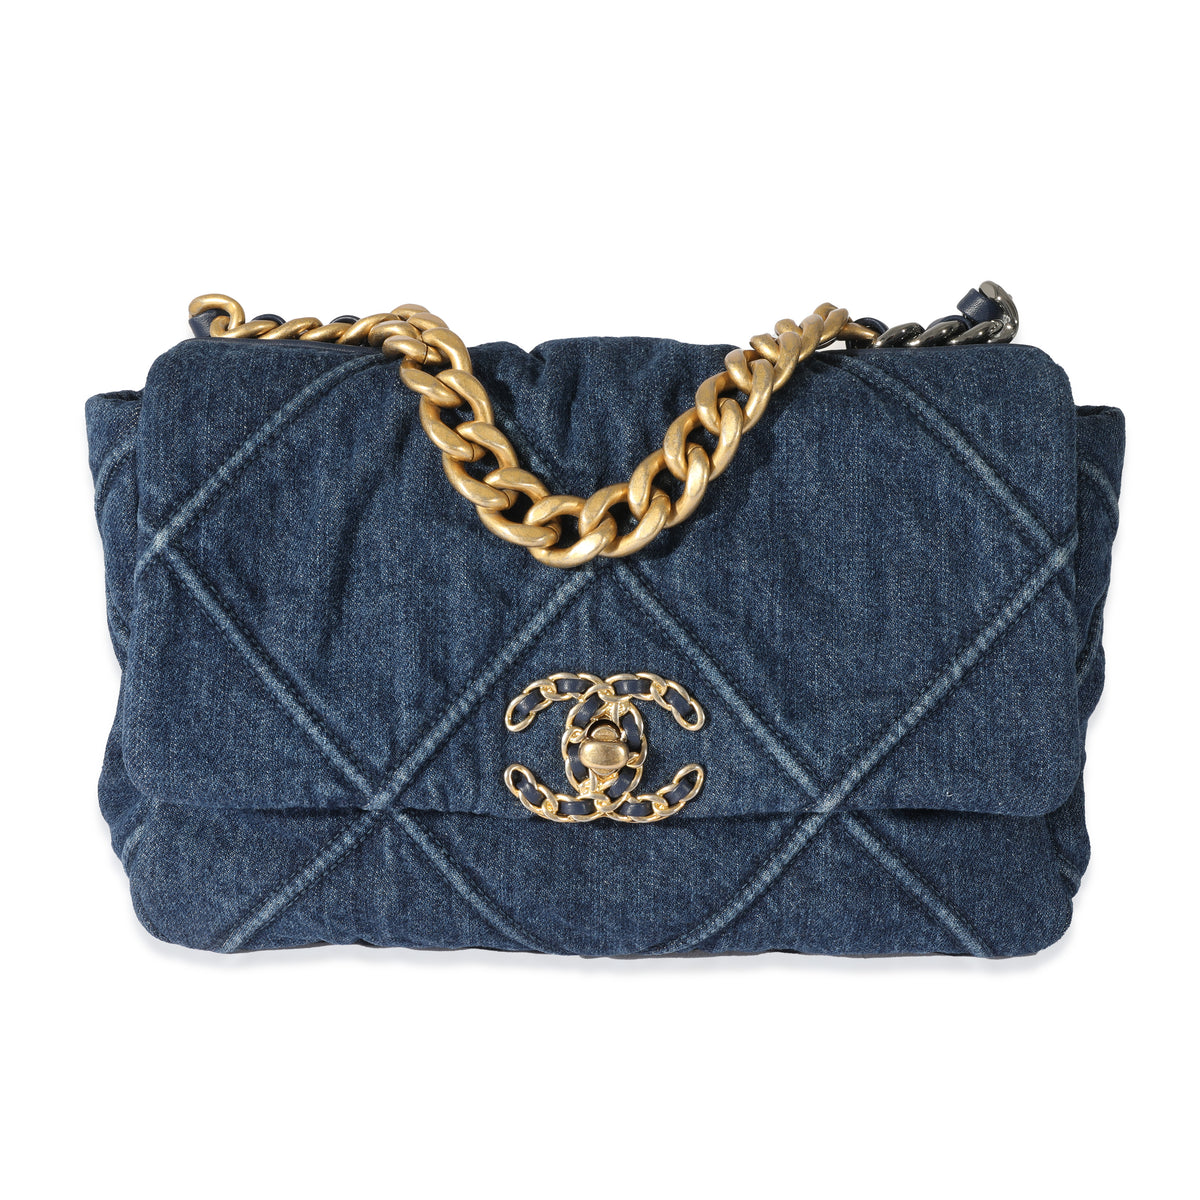 Chanel Blue Quilted Denim Medium Chanel 19 Flap Bag, myGemma